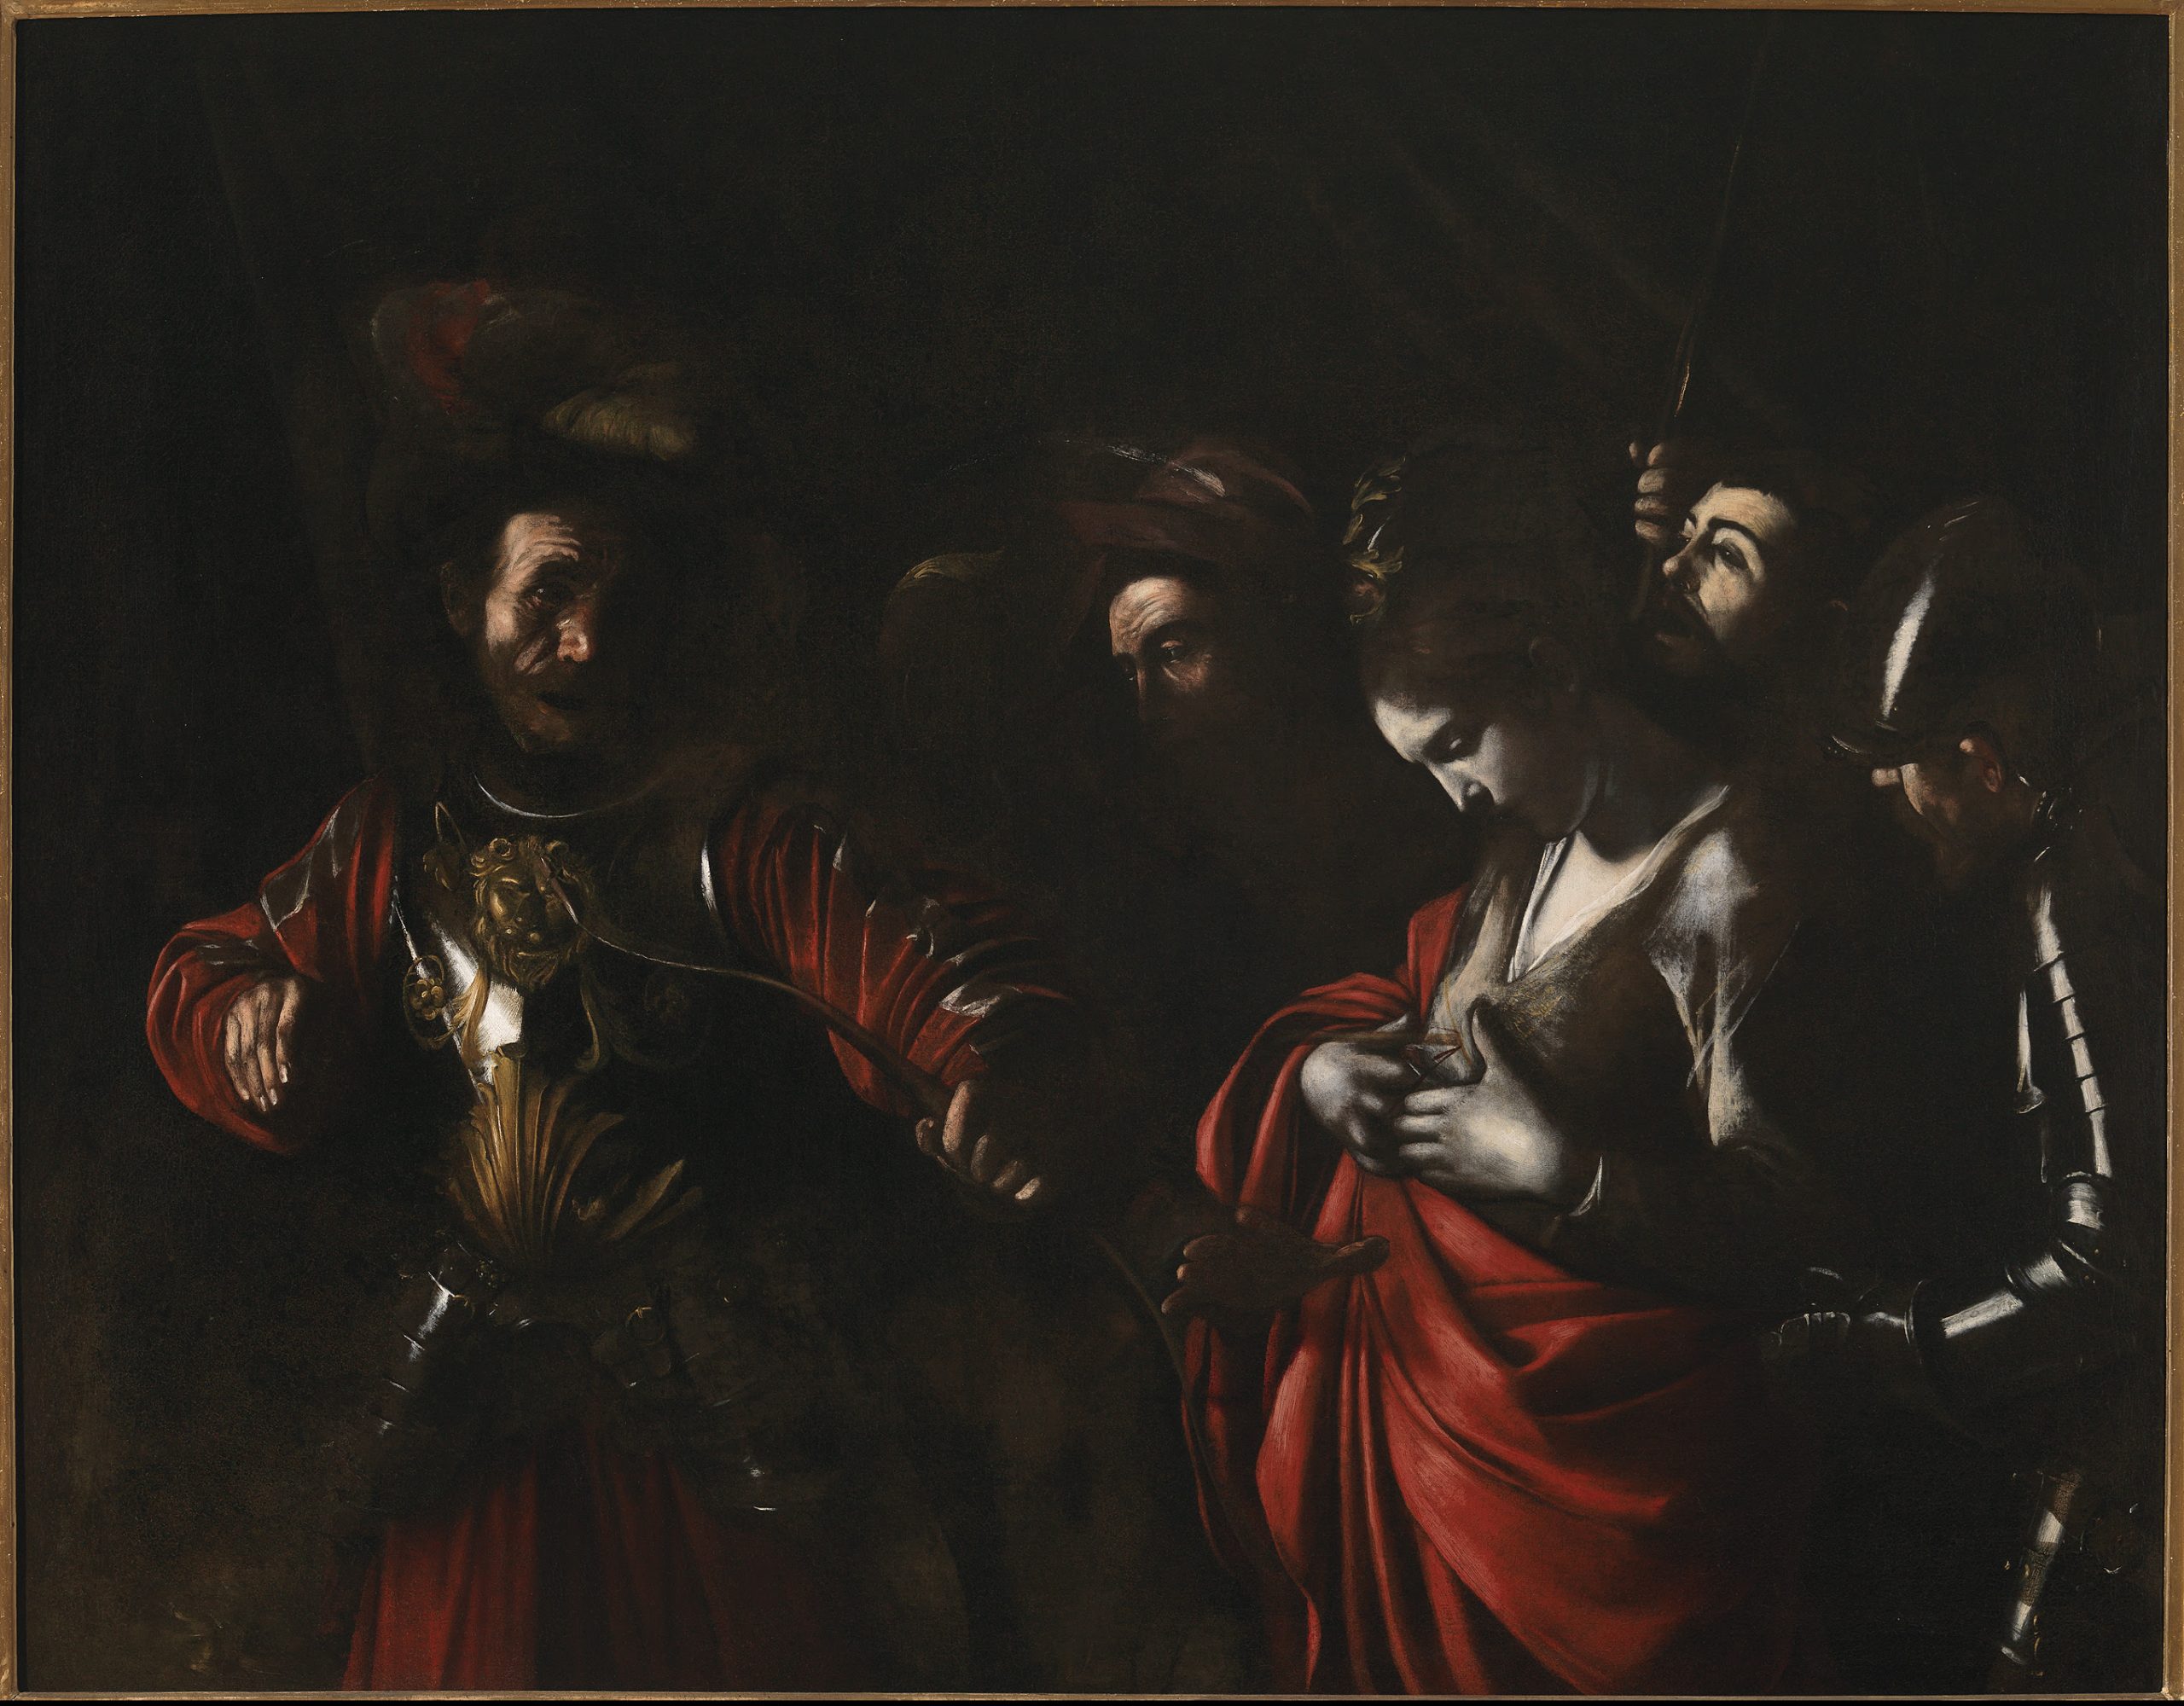 L’ultimo dipinto di Caravaggio sarà in mostra alla National Gallery di Londra